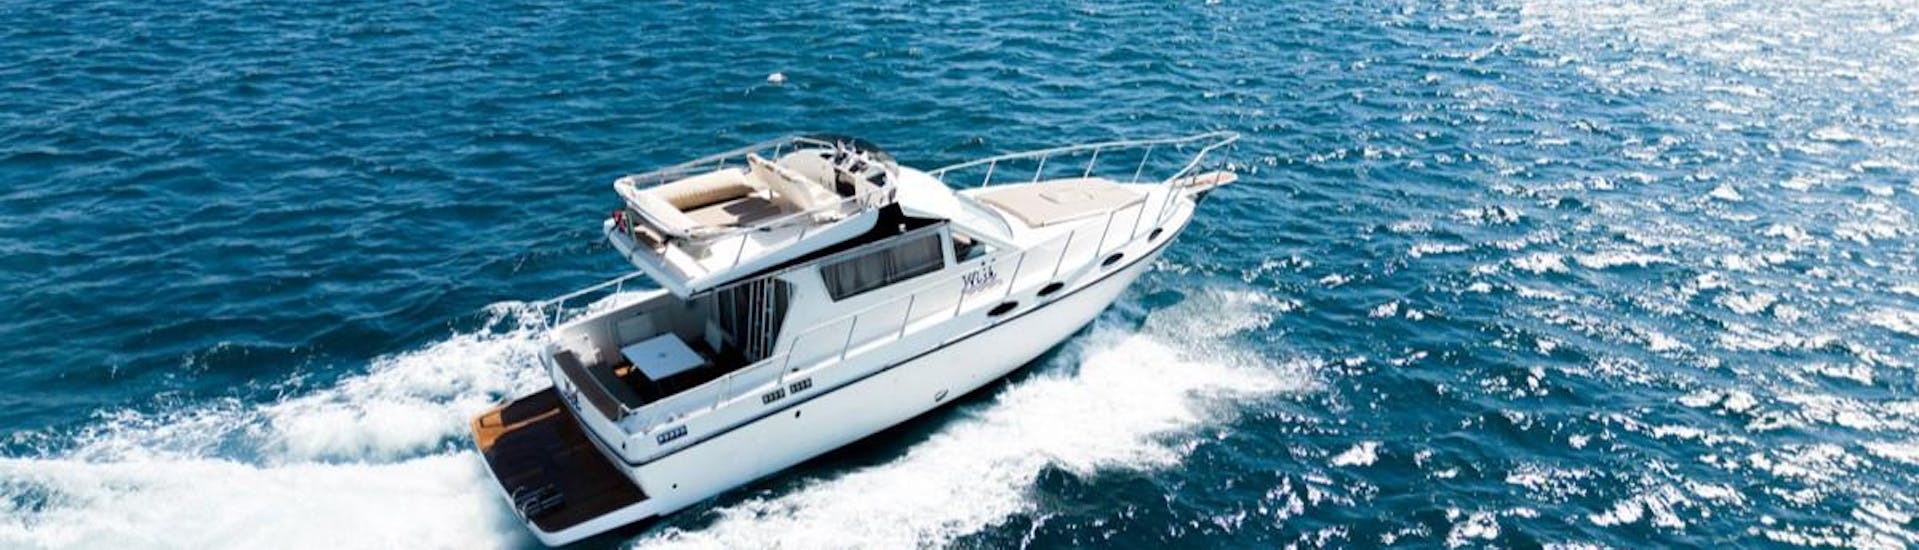 La barca usata durante le gite con Wish Boat Rent Catania.